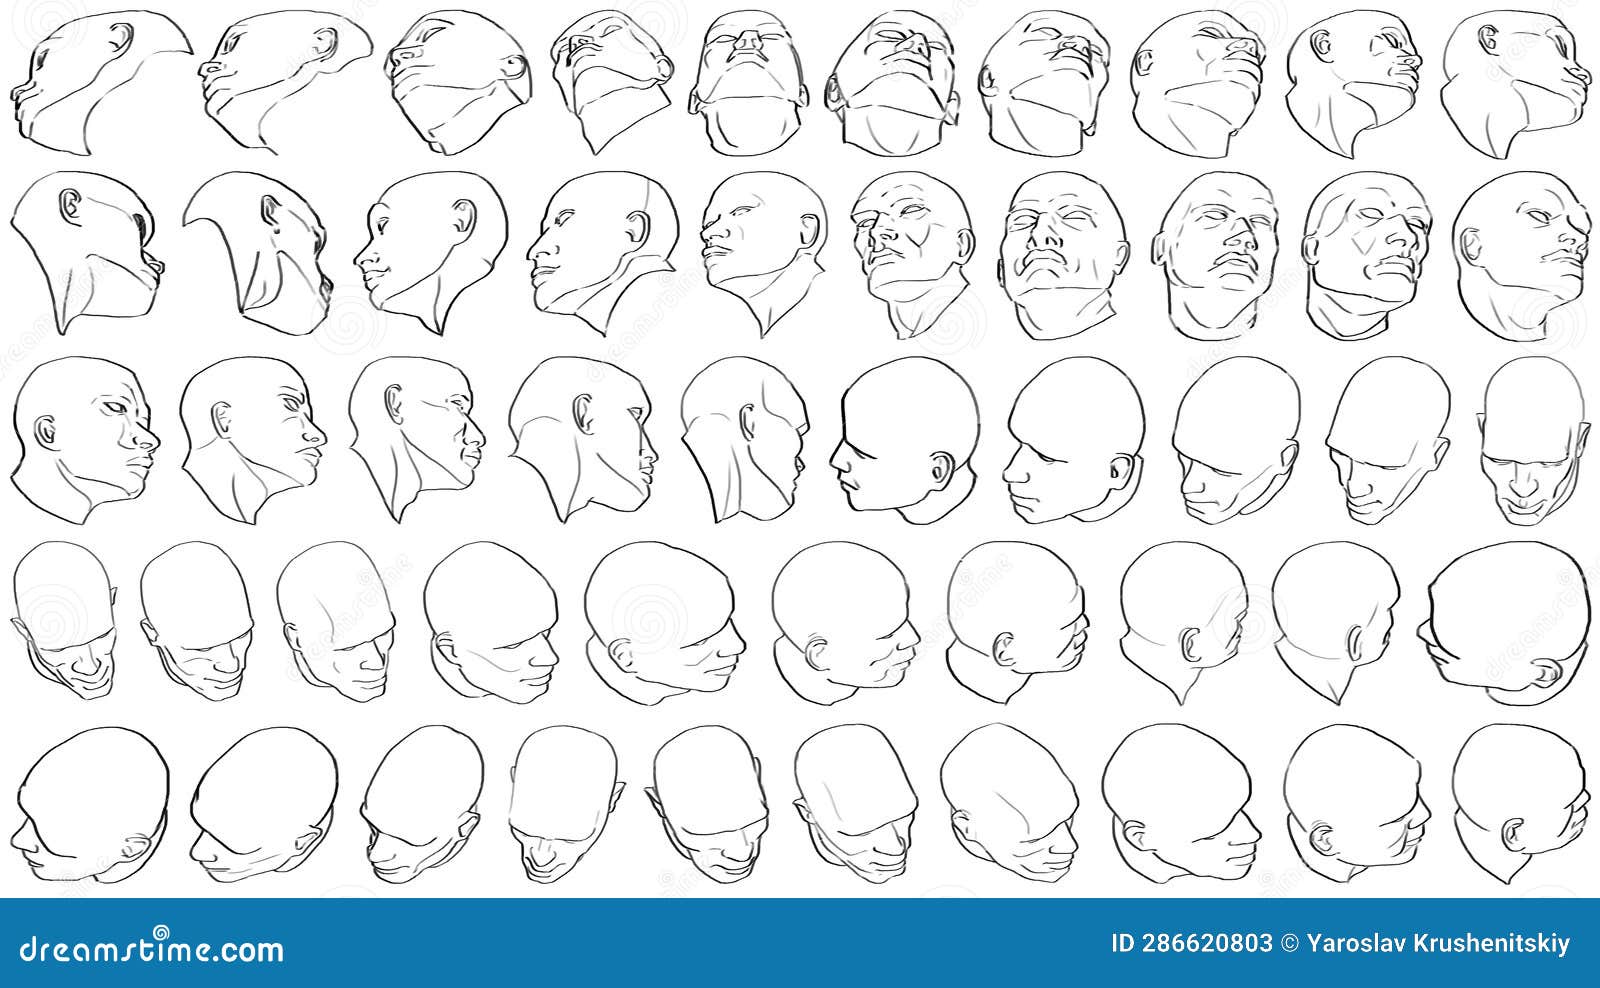 50 Heads (Difficult Foreshortening) - Digital Art Stock Illustration ...